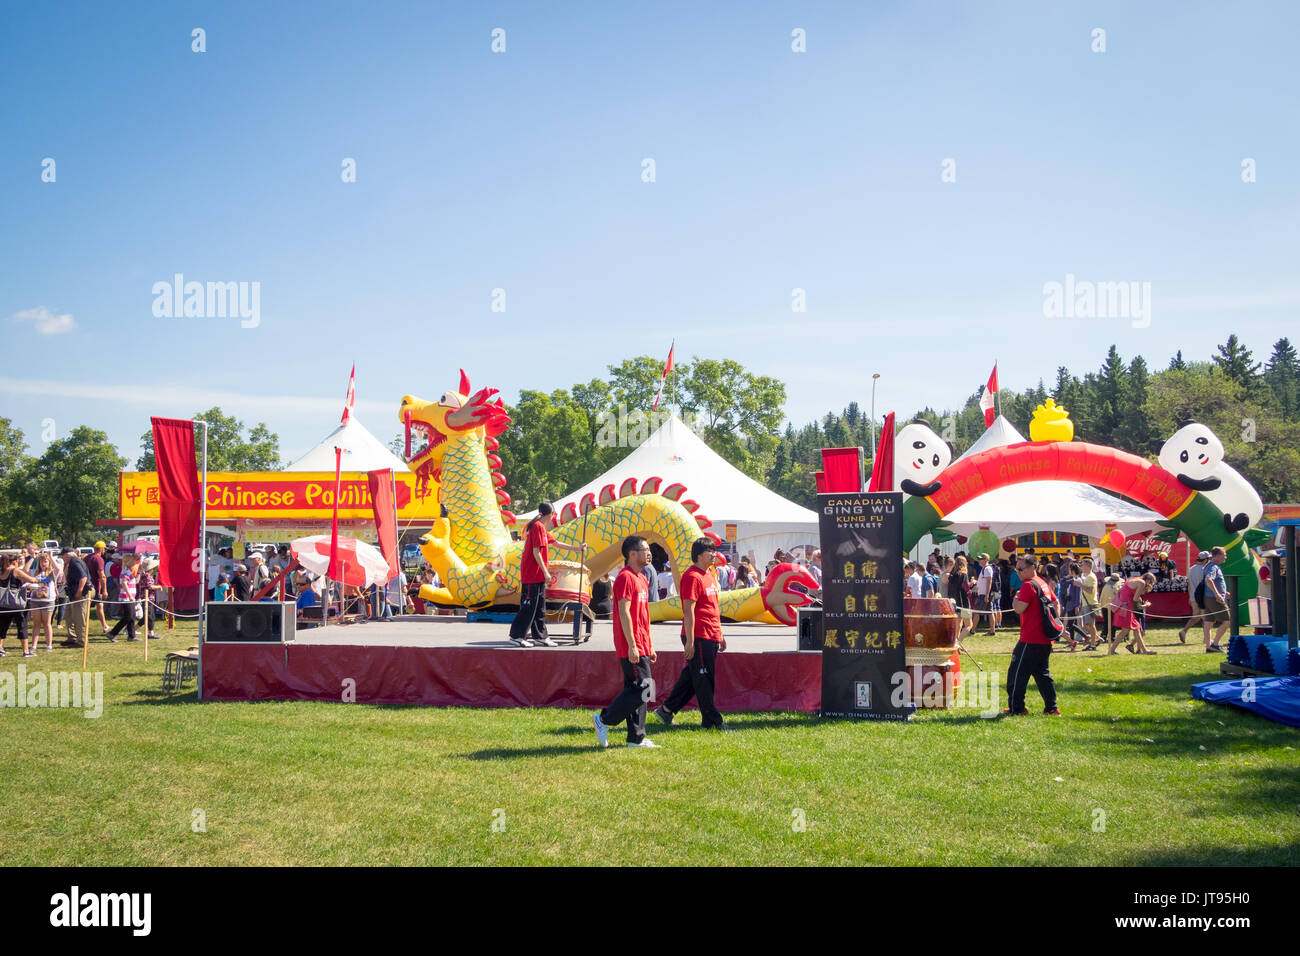 Ein Blick auf den Chinesischen Pavillon von der Heritage Festival 2017, einem beliebten multikulturelle Festival findet jeden Sommer in Edmonton, Alberta, Kanada. Stockfoto